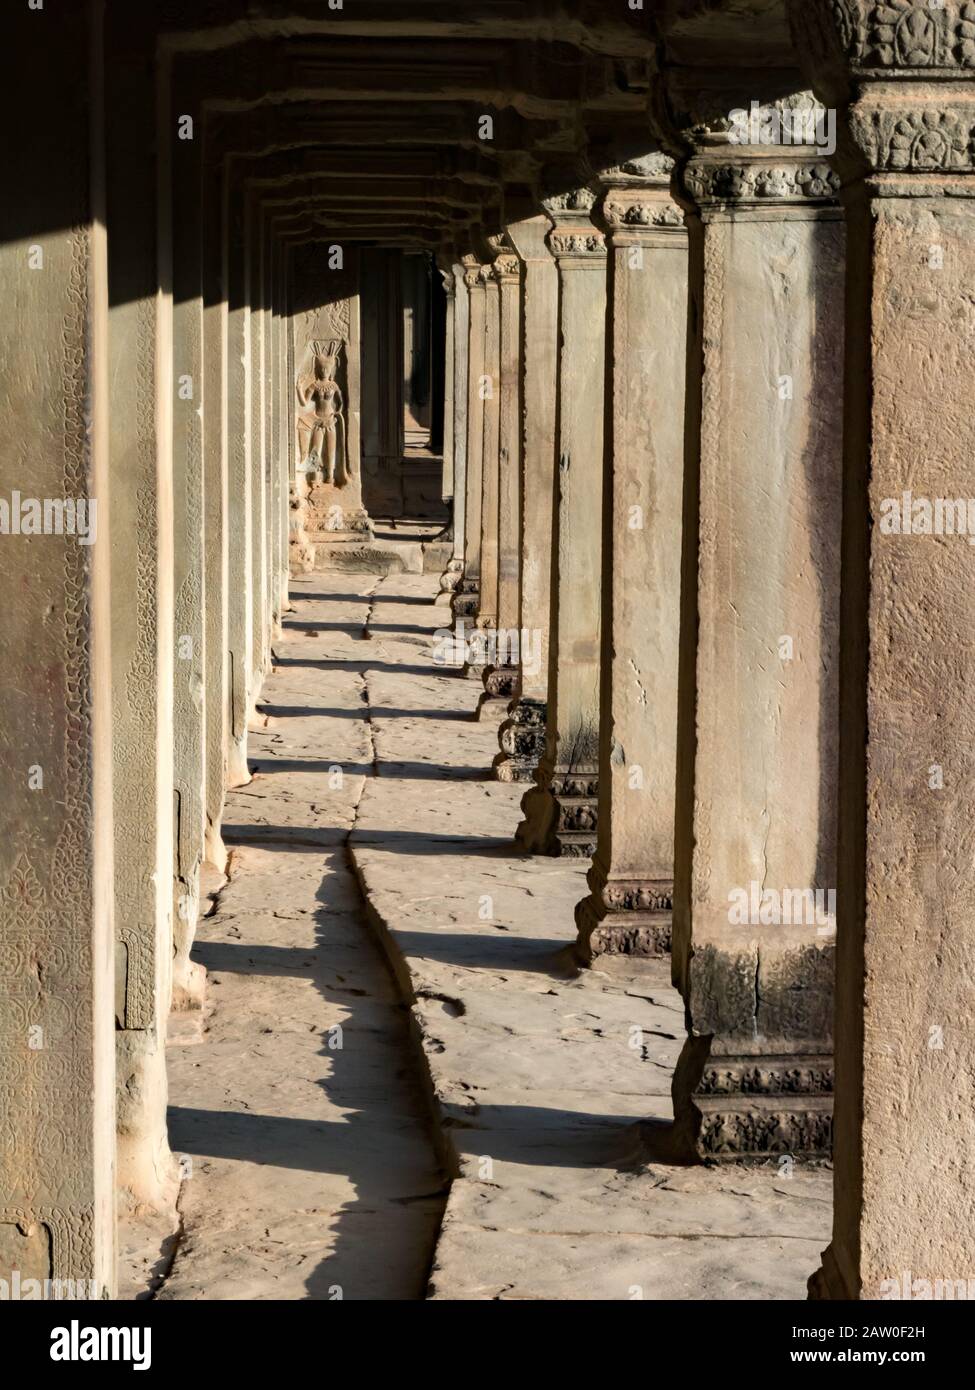 Columns along Angkor Wat in Cambodia Stock Photo